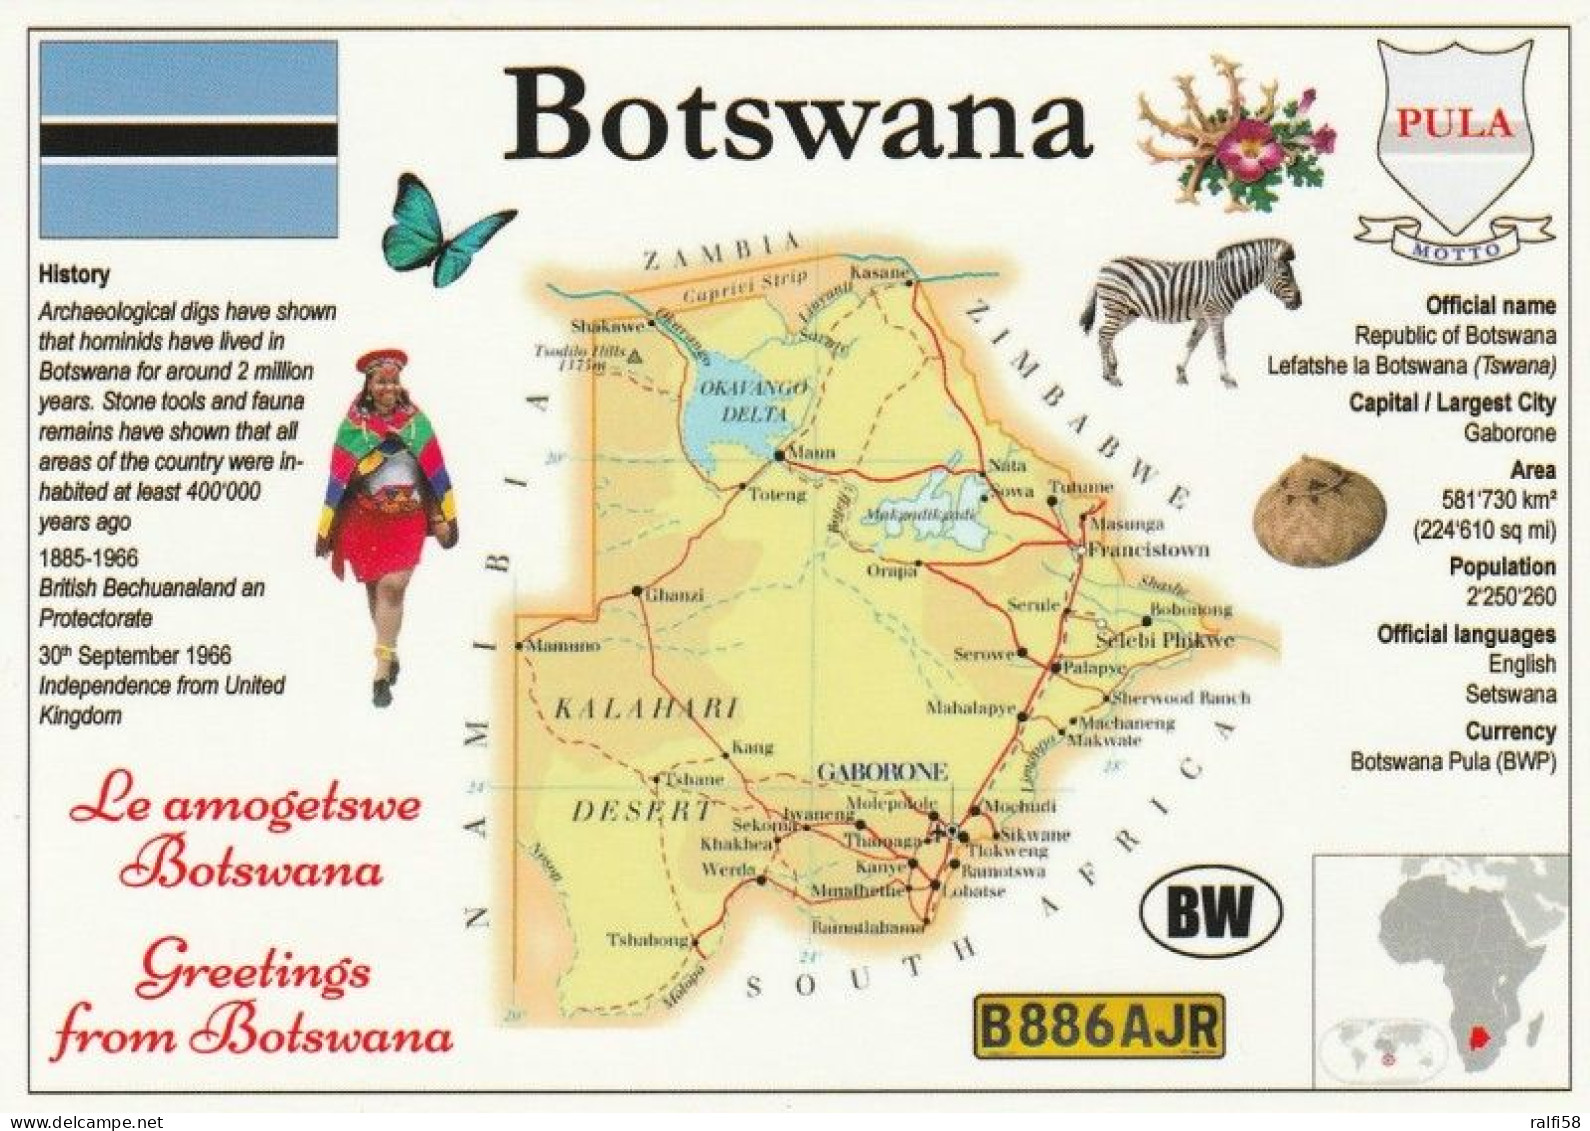 1 Map Of Botswana * 1 Ansichtskarte Mit Der Landkarte Von Botswana, Informationen Und Der Flagge Des Landes * - Landkarten